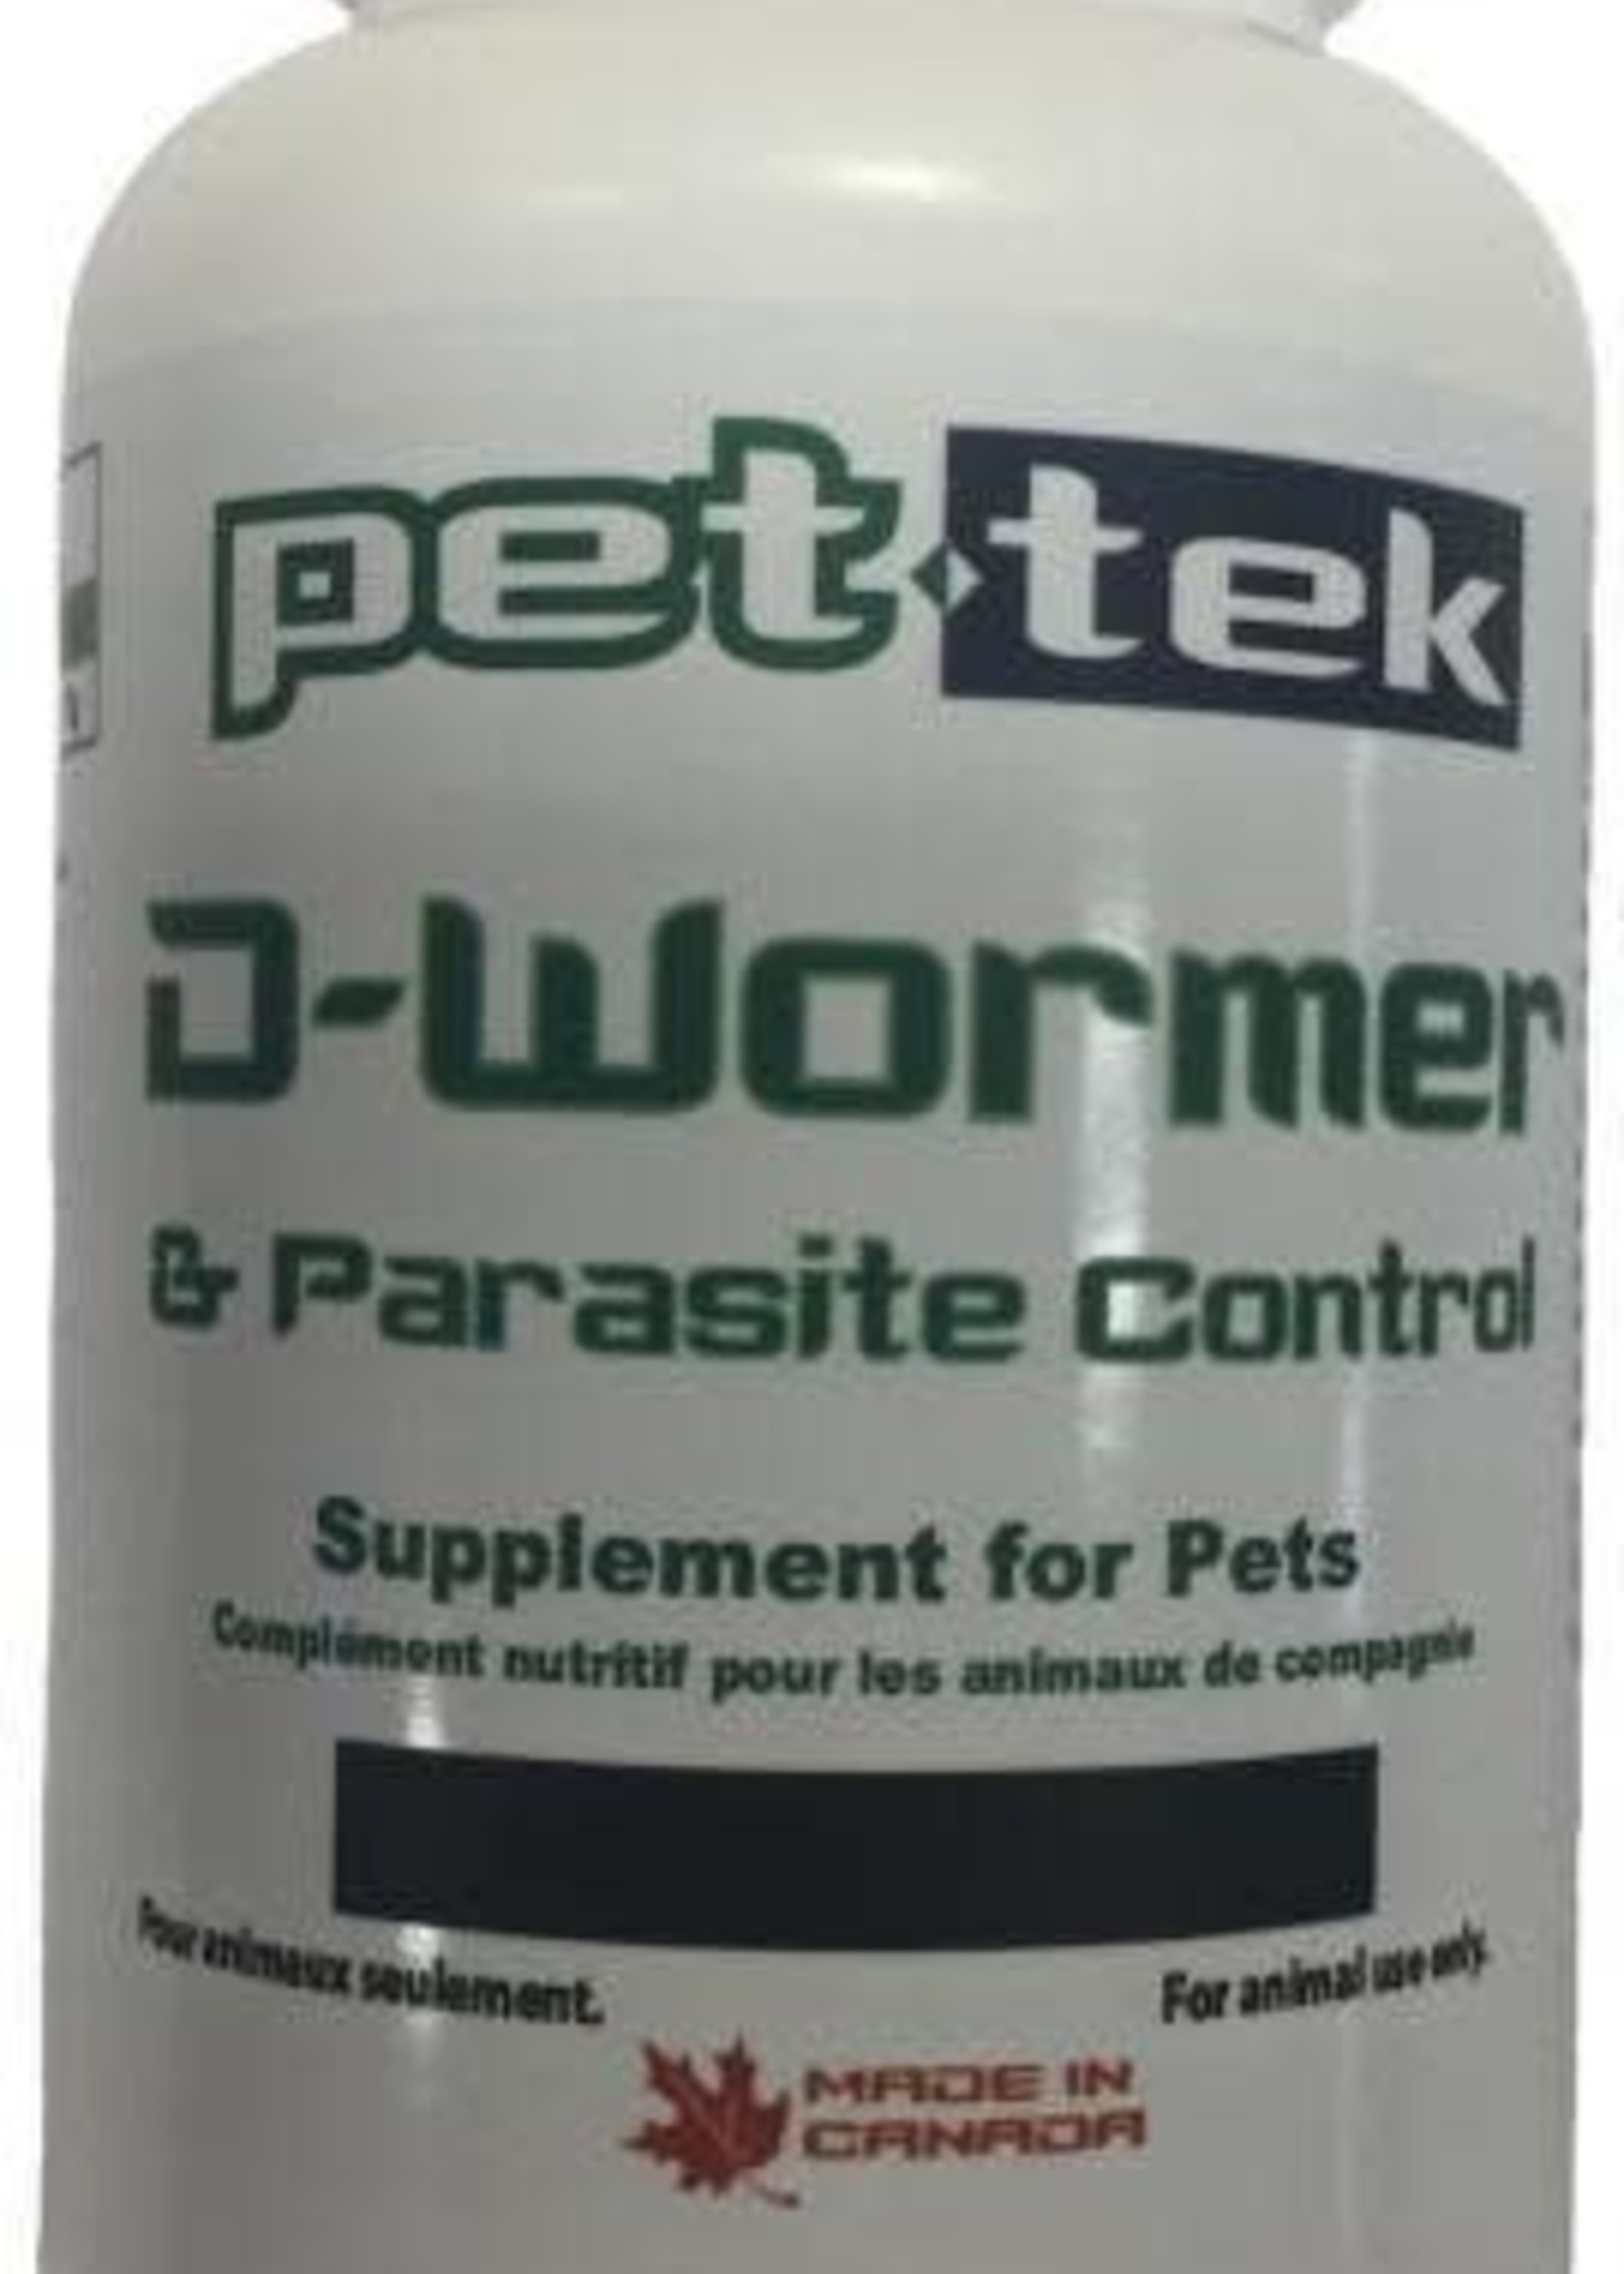 Pet-Tek Pet-Tek D-Wormer & Parasite Control 100g